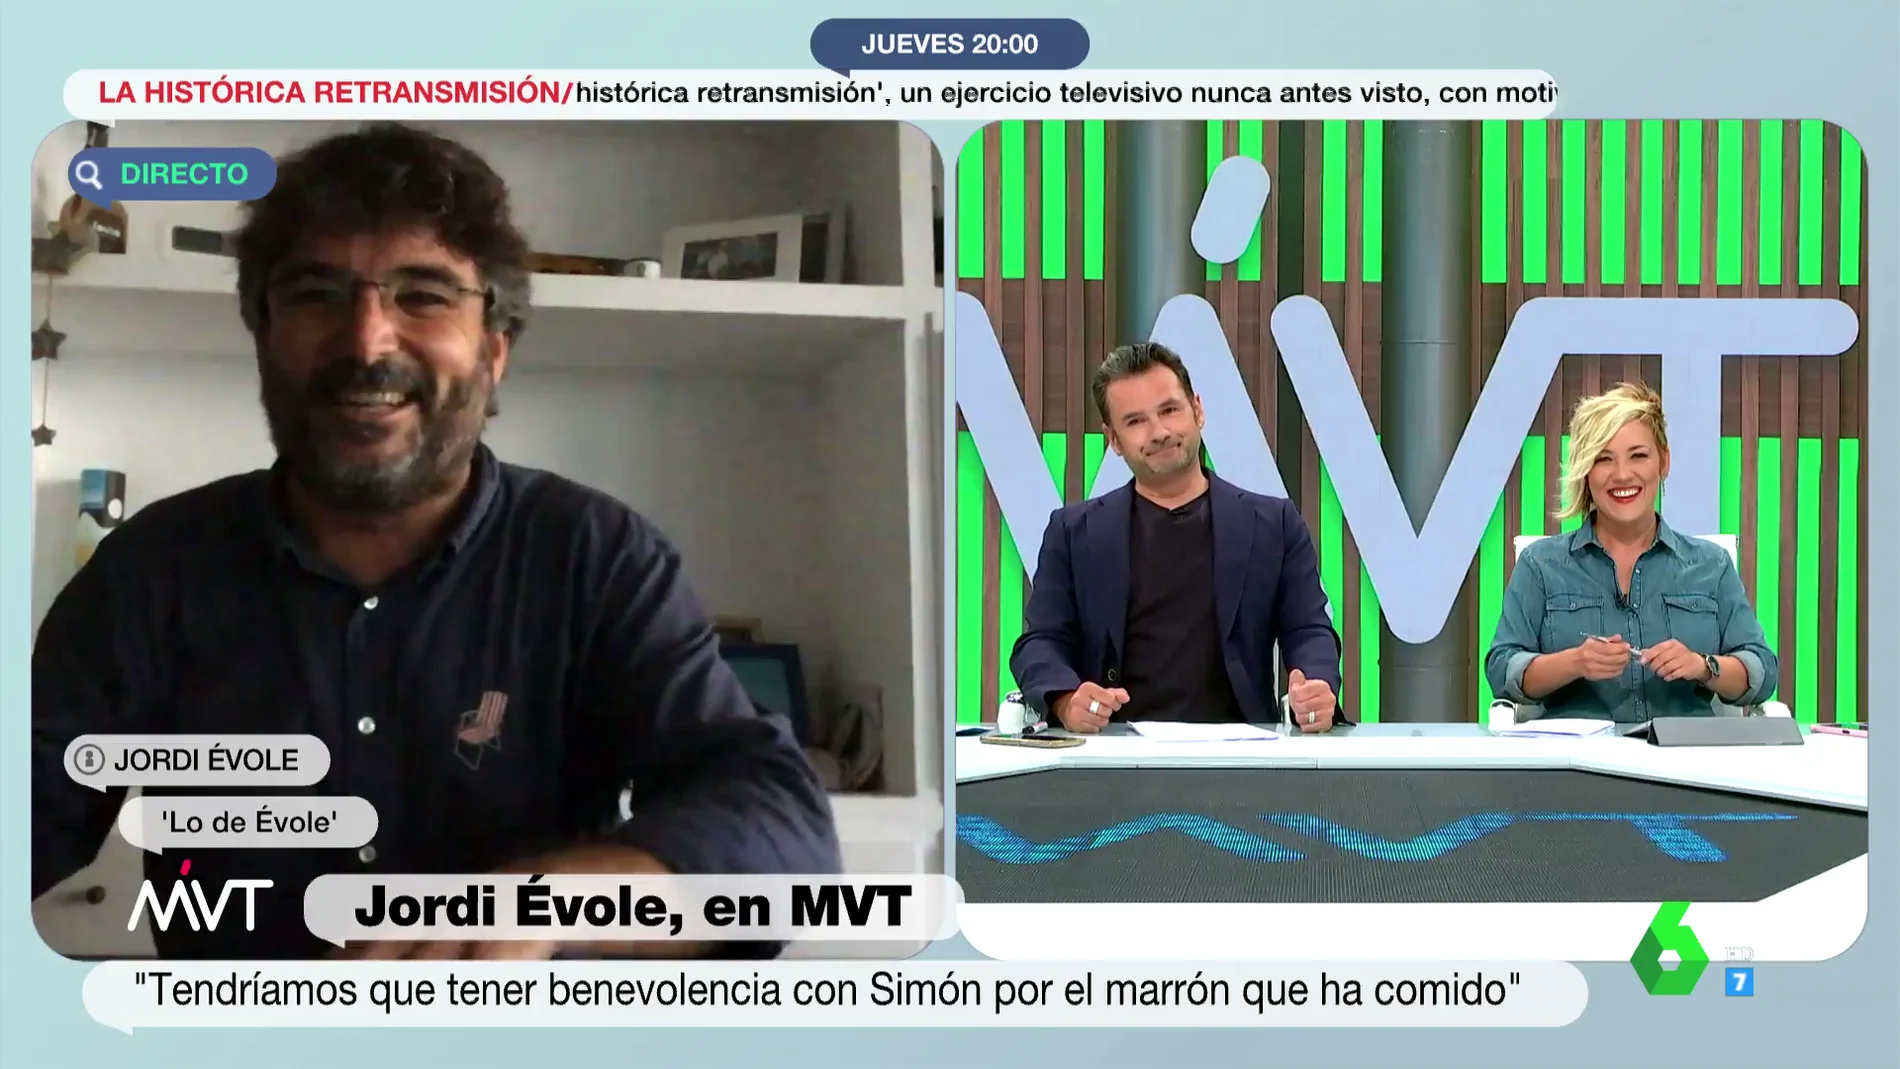 Jordi Évole avanza que entrevistará a un personaje importante en Lo de Évole